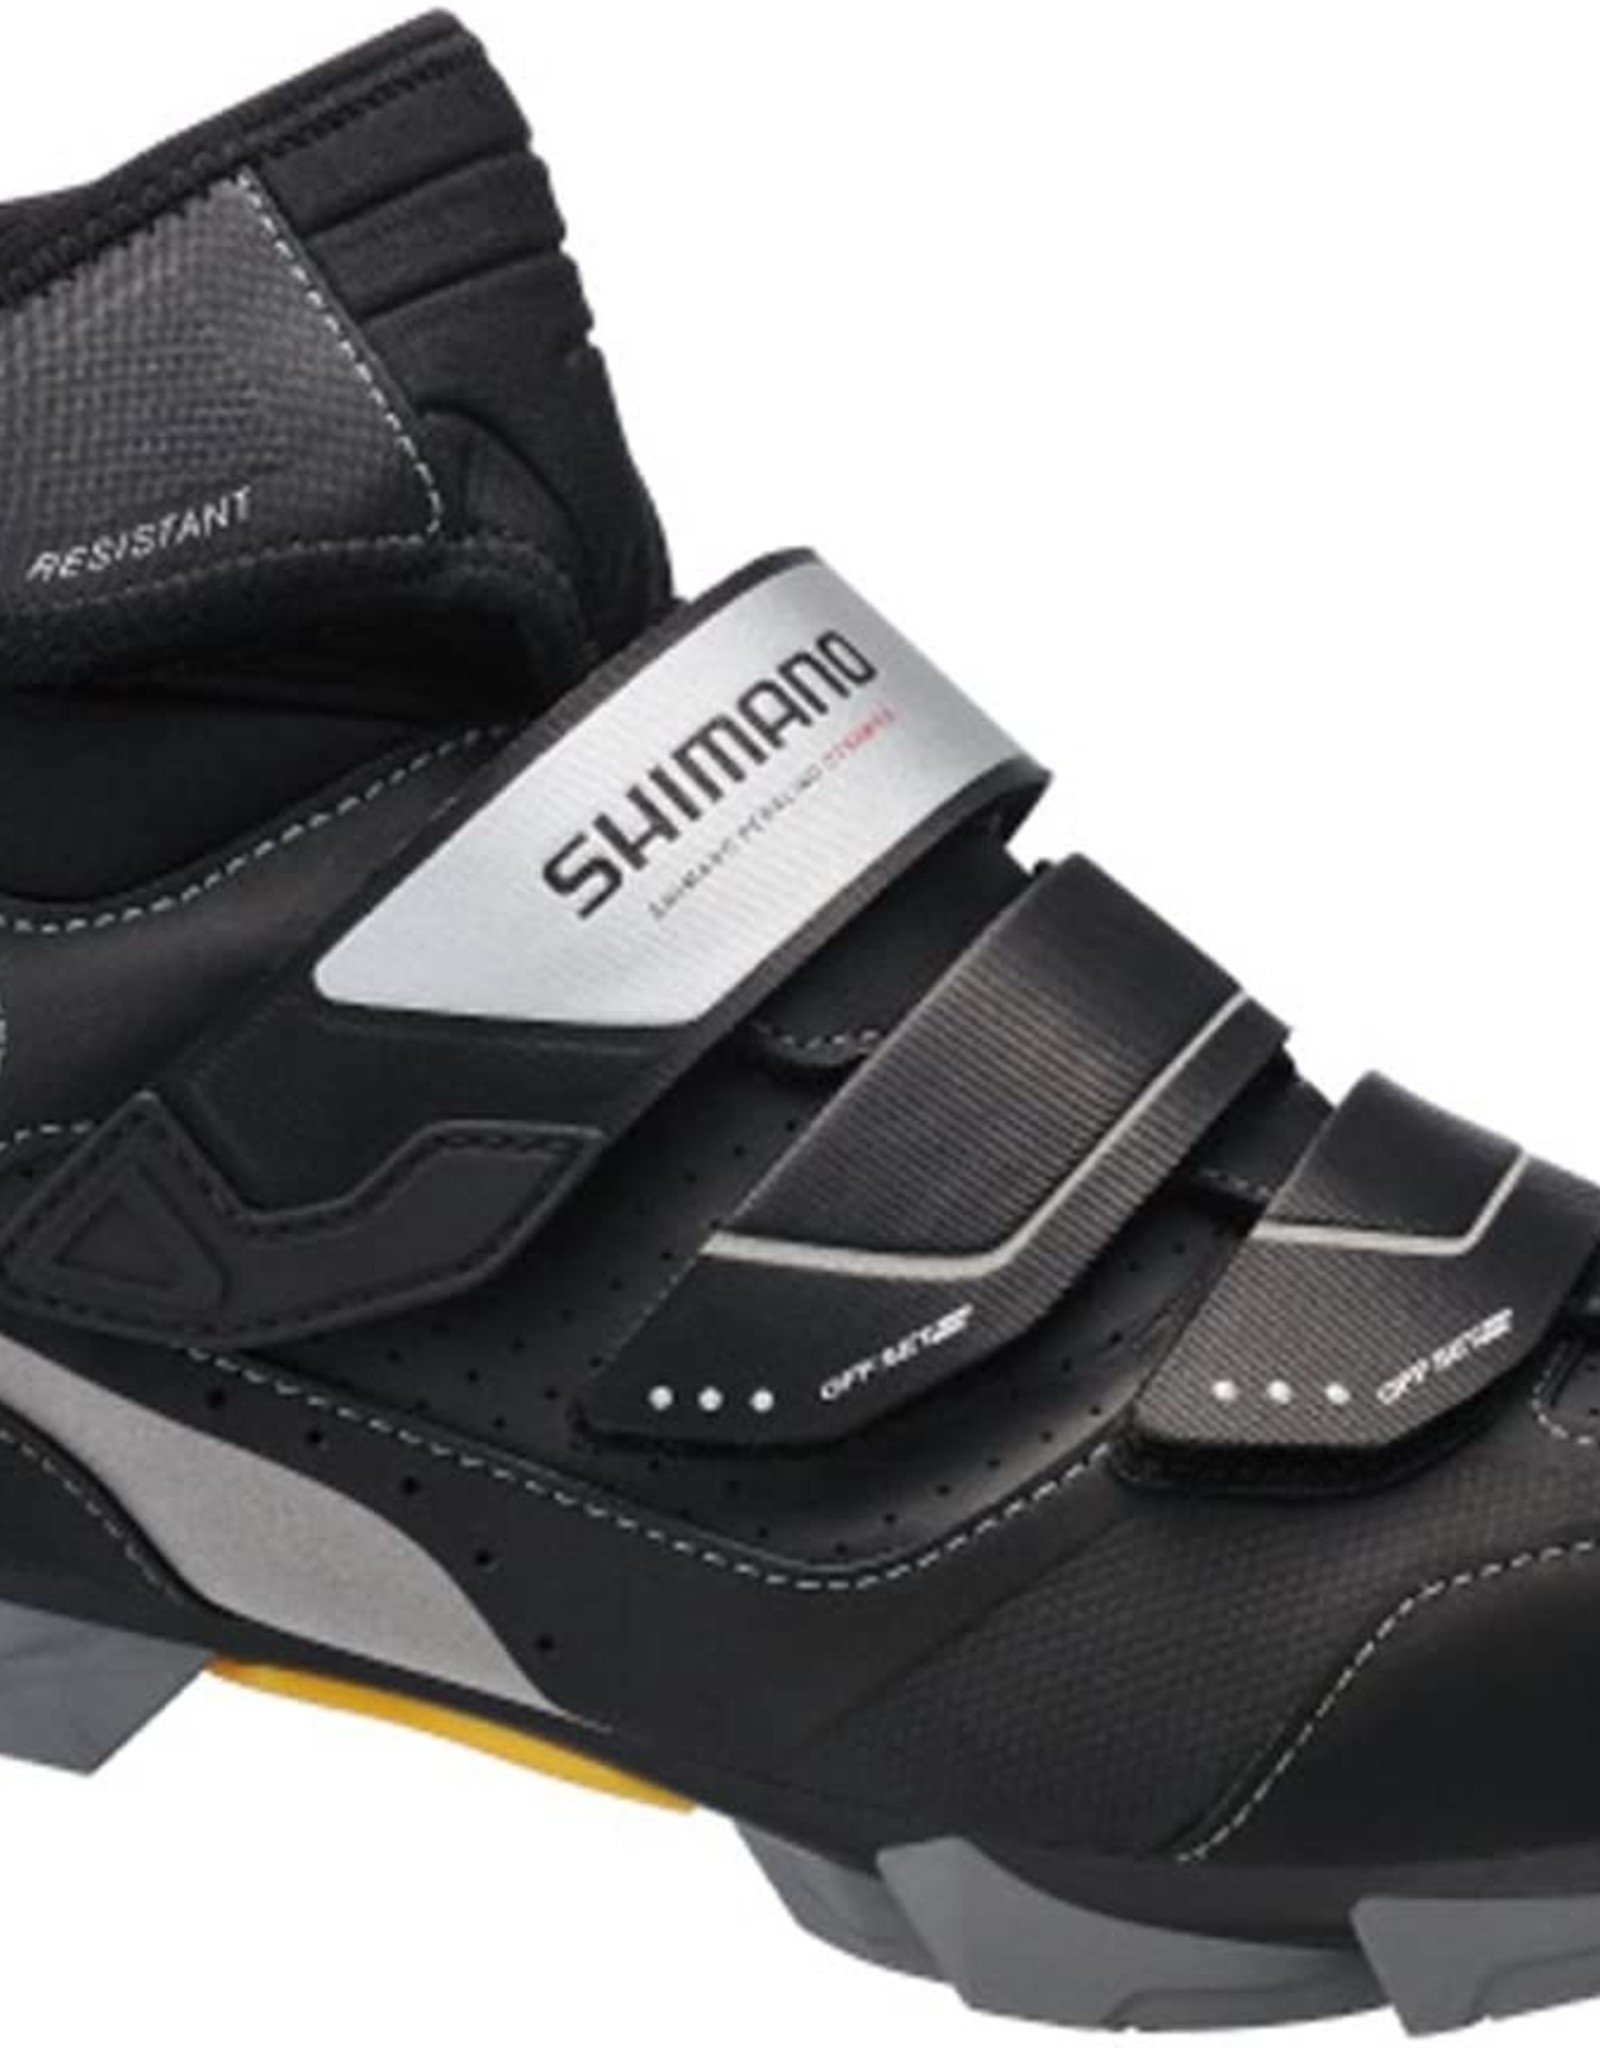 SHI SH-MW81 Bicycle Shoes BLACK 45.0